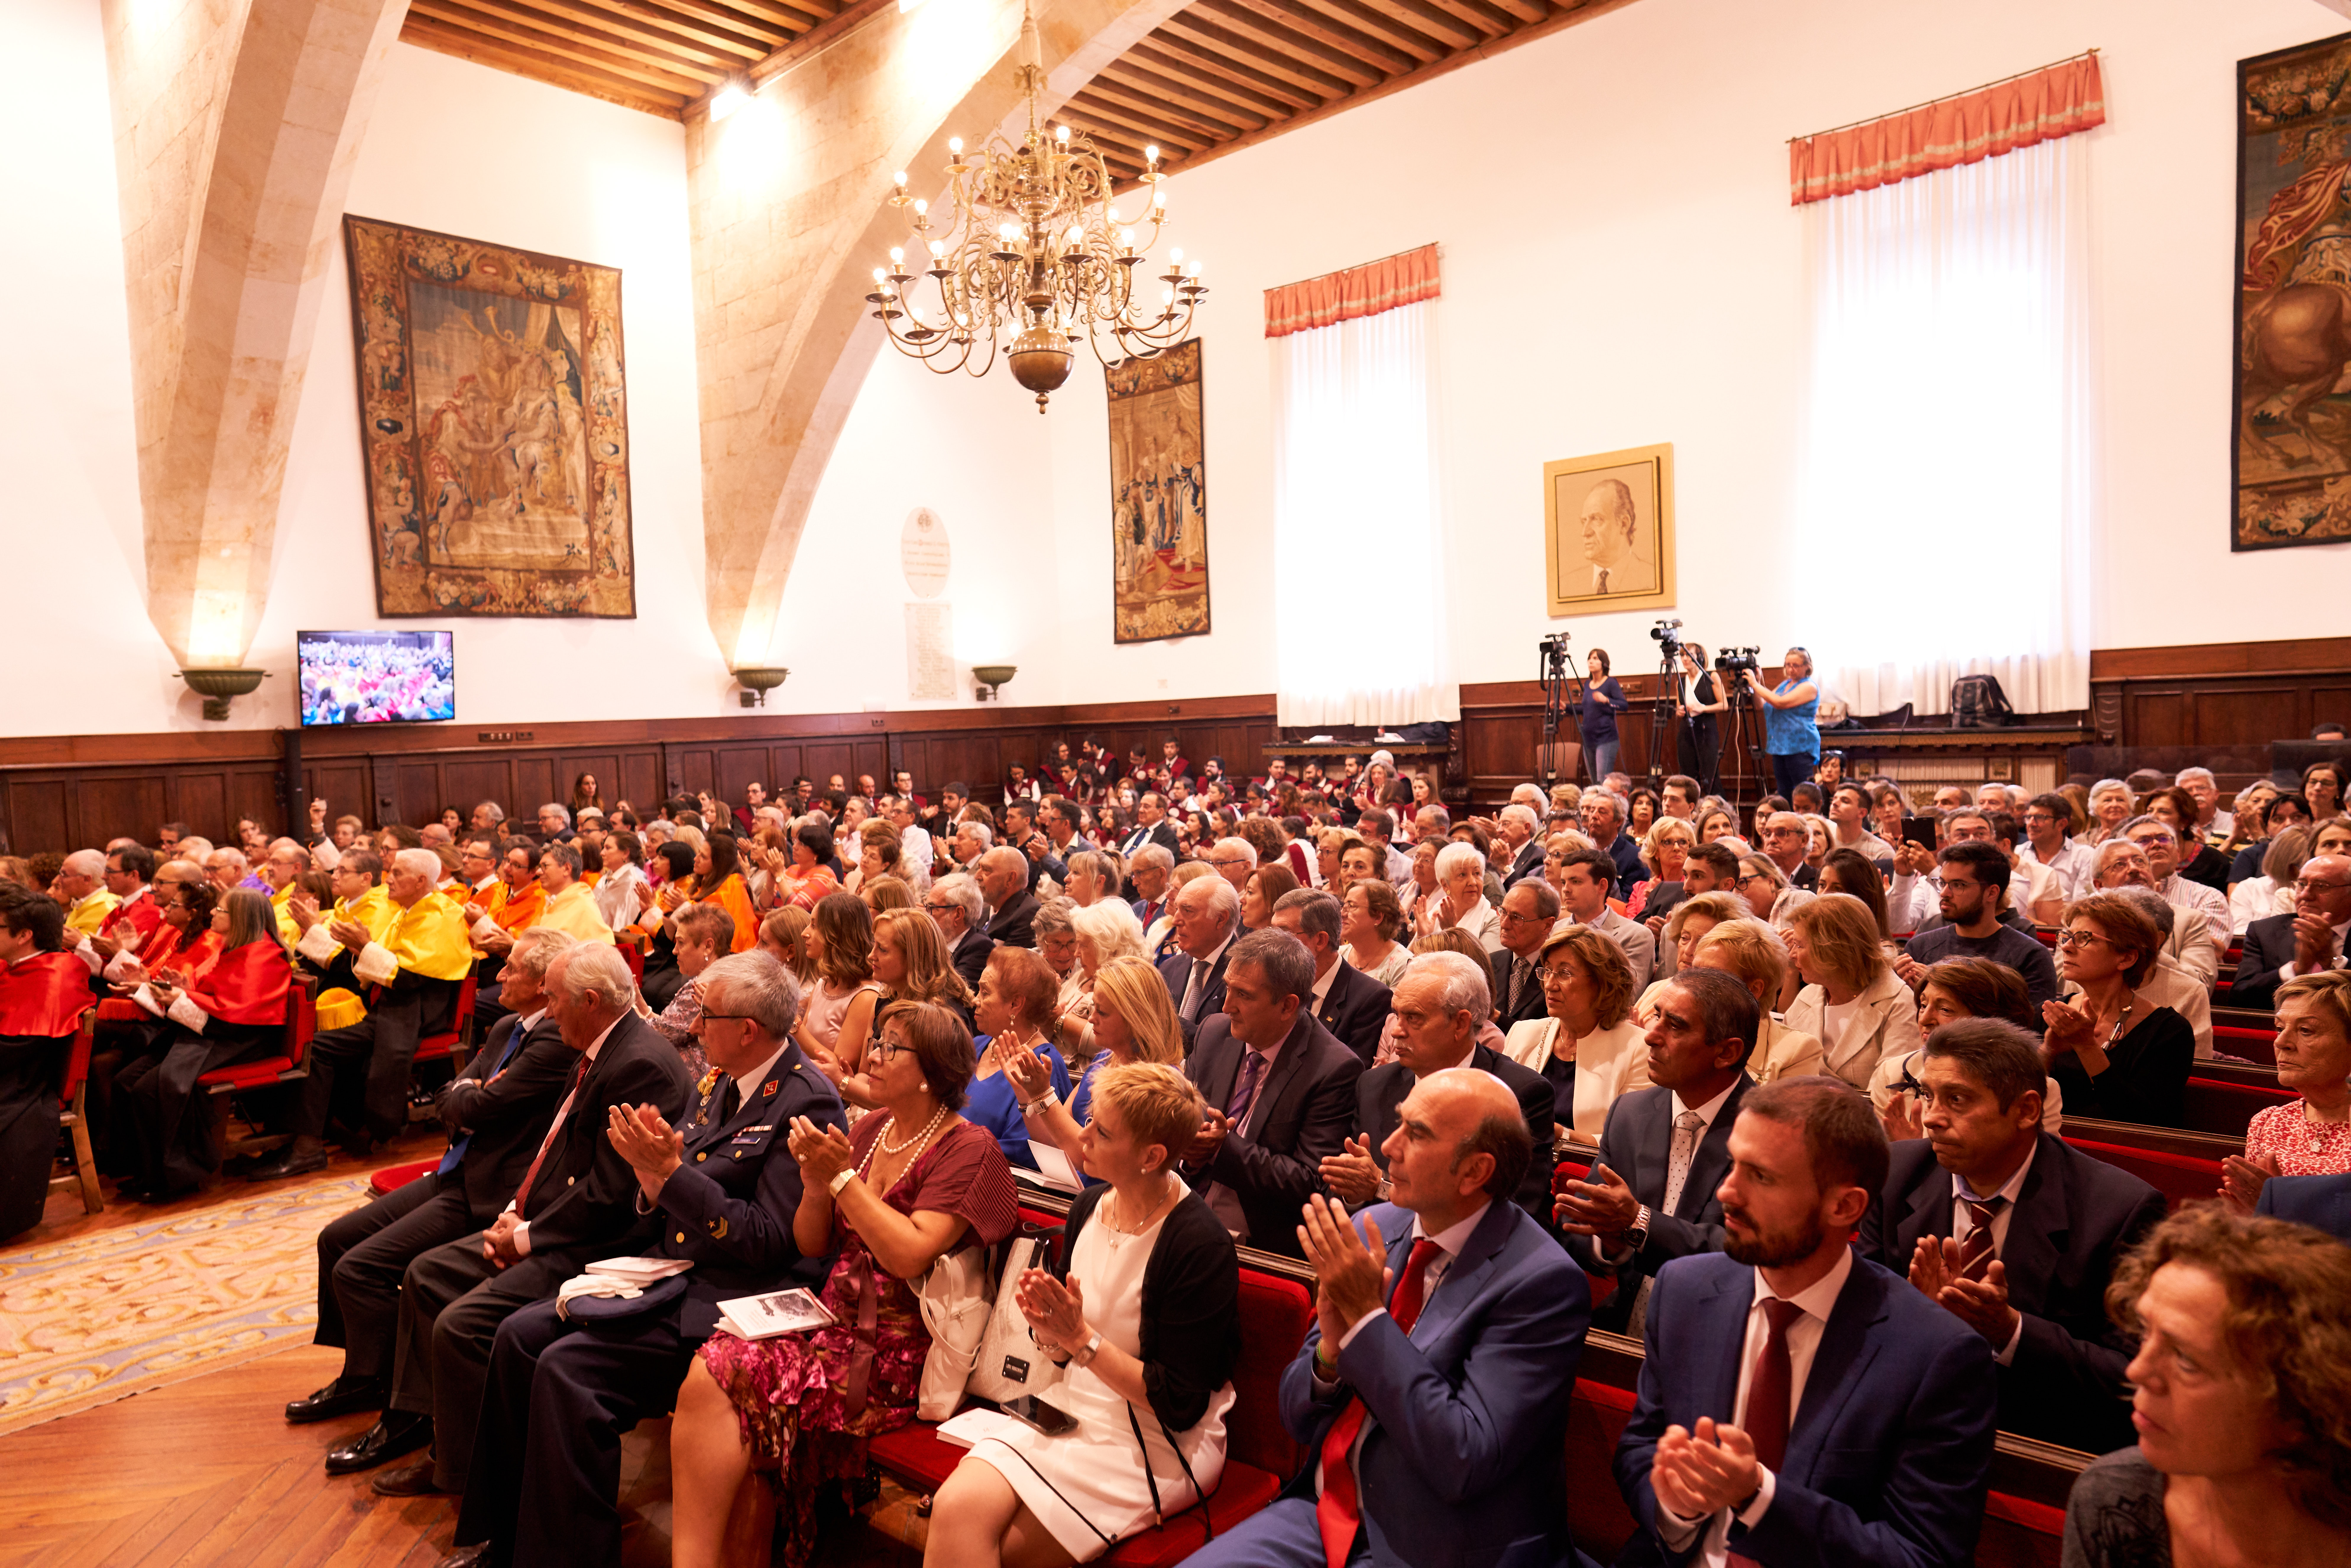 El rector inaugura el nuevo curso de la Universidad de Salamanca marcado por el crecimiento y la apuesta por la excelencia docente e investigadora